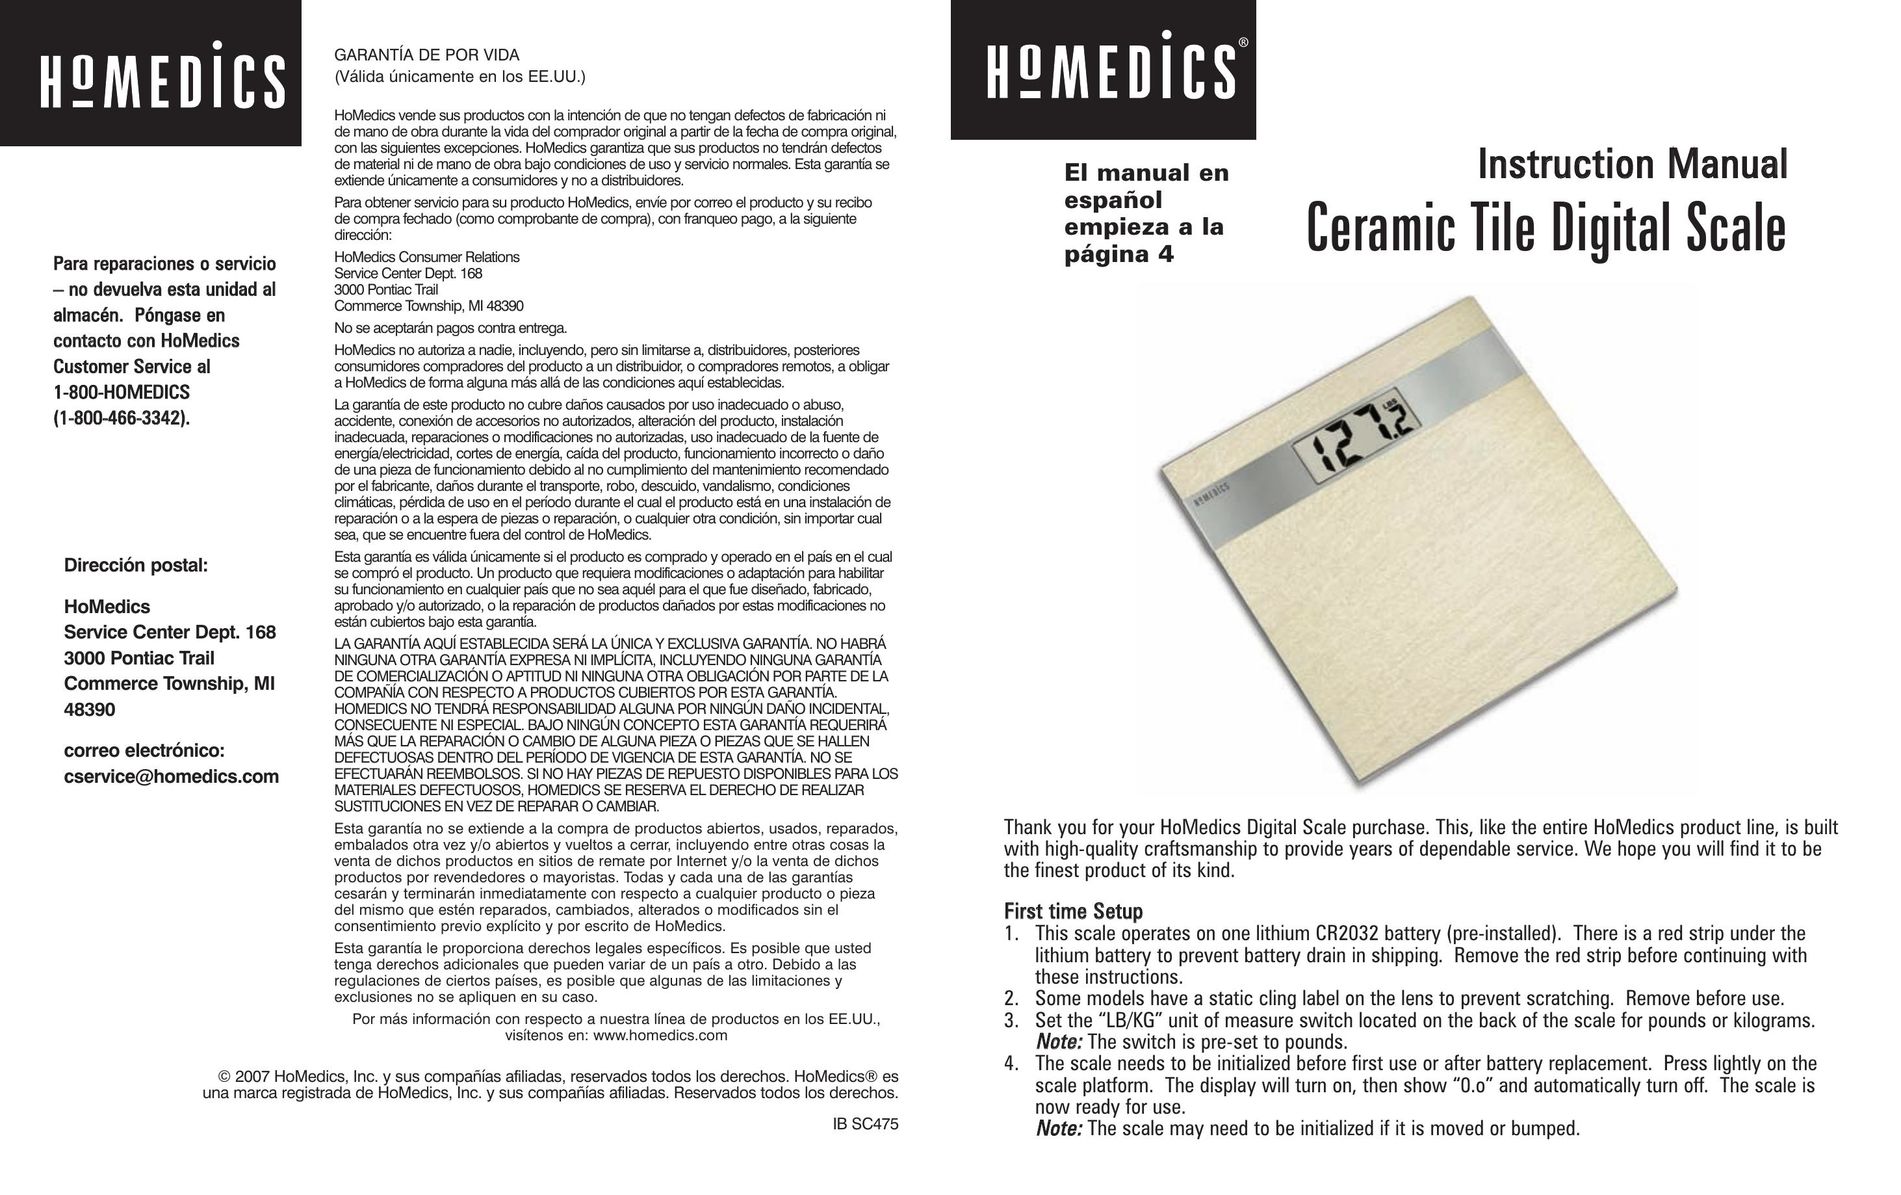 HoMedics Ceramic Tile Digital Scale Flooring User Manual